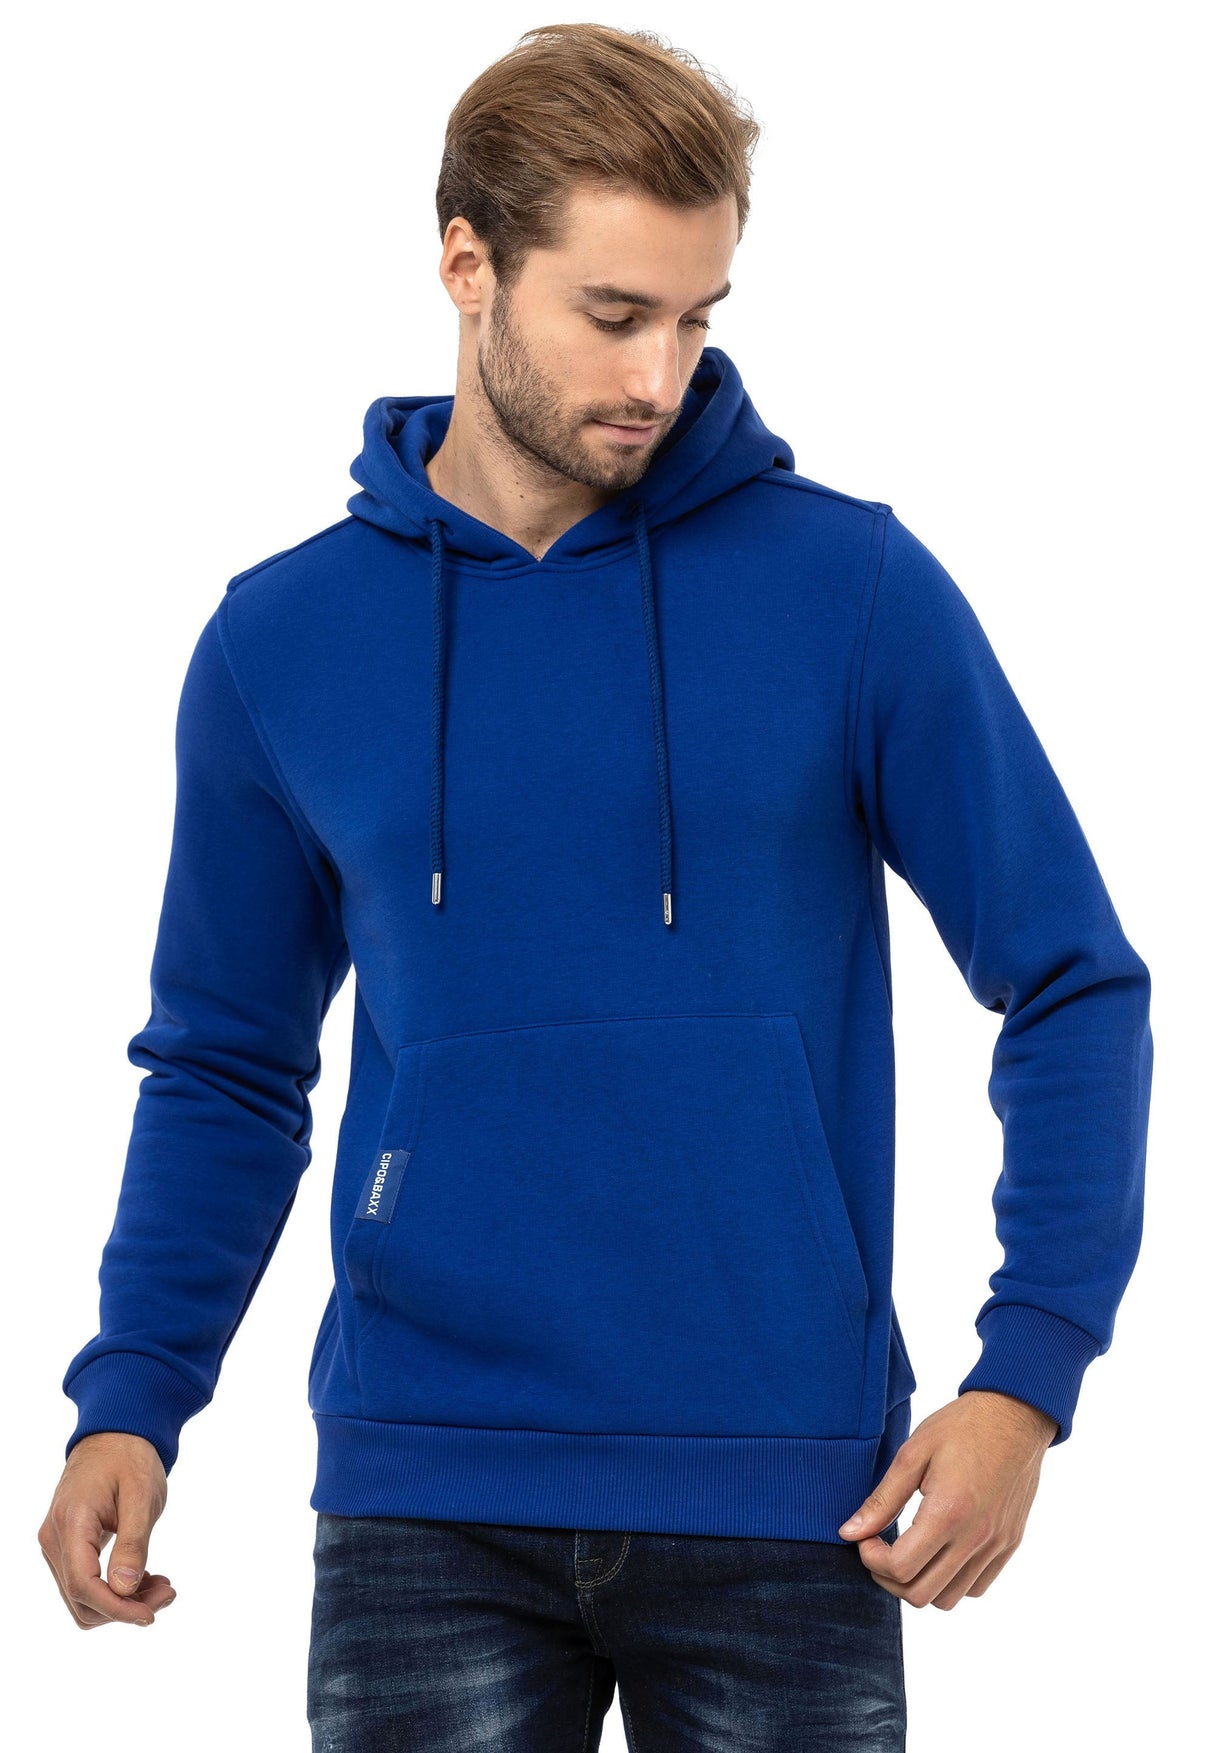 CL557 Men's Hooded Sweatshirt